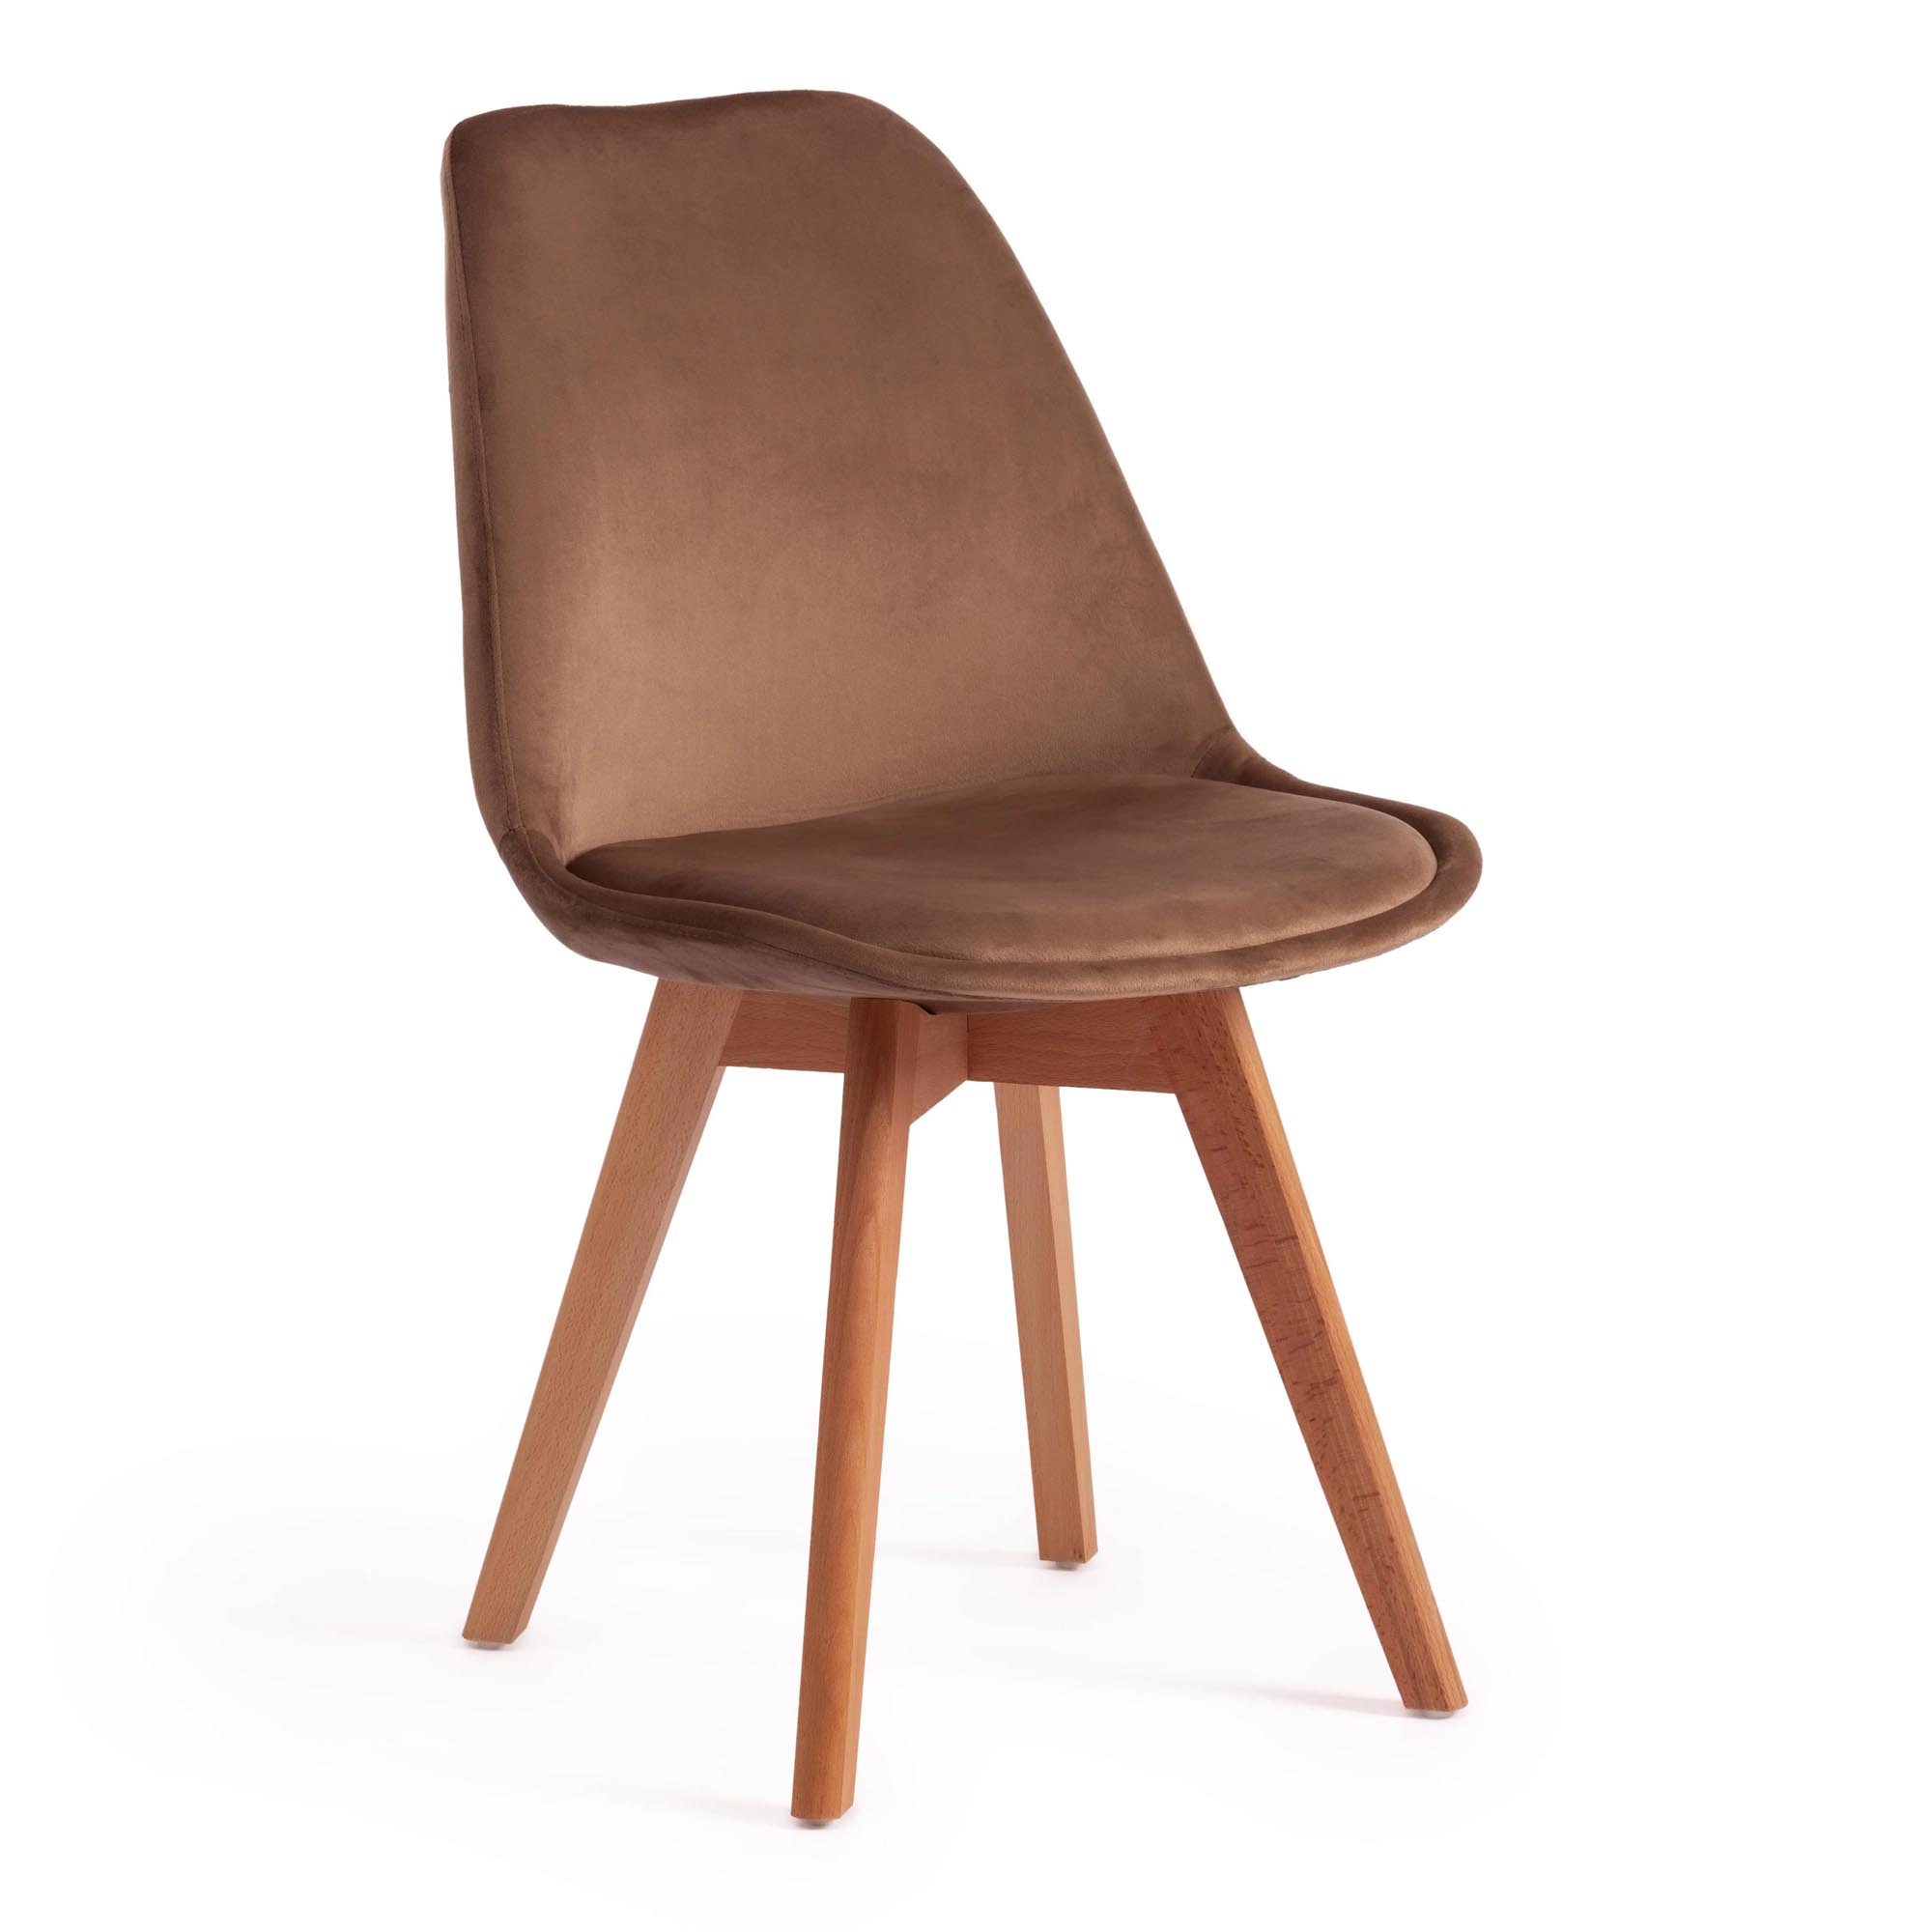 Стул TC Tulip Soft 54x47x83 см коричневый/натуральный стул besportble стул пластиковый ступенчатый стул высота 9 5 дюйма детский стул стул для детского сада кухни спальни гостиной